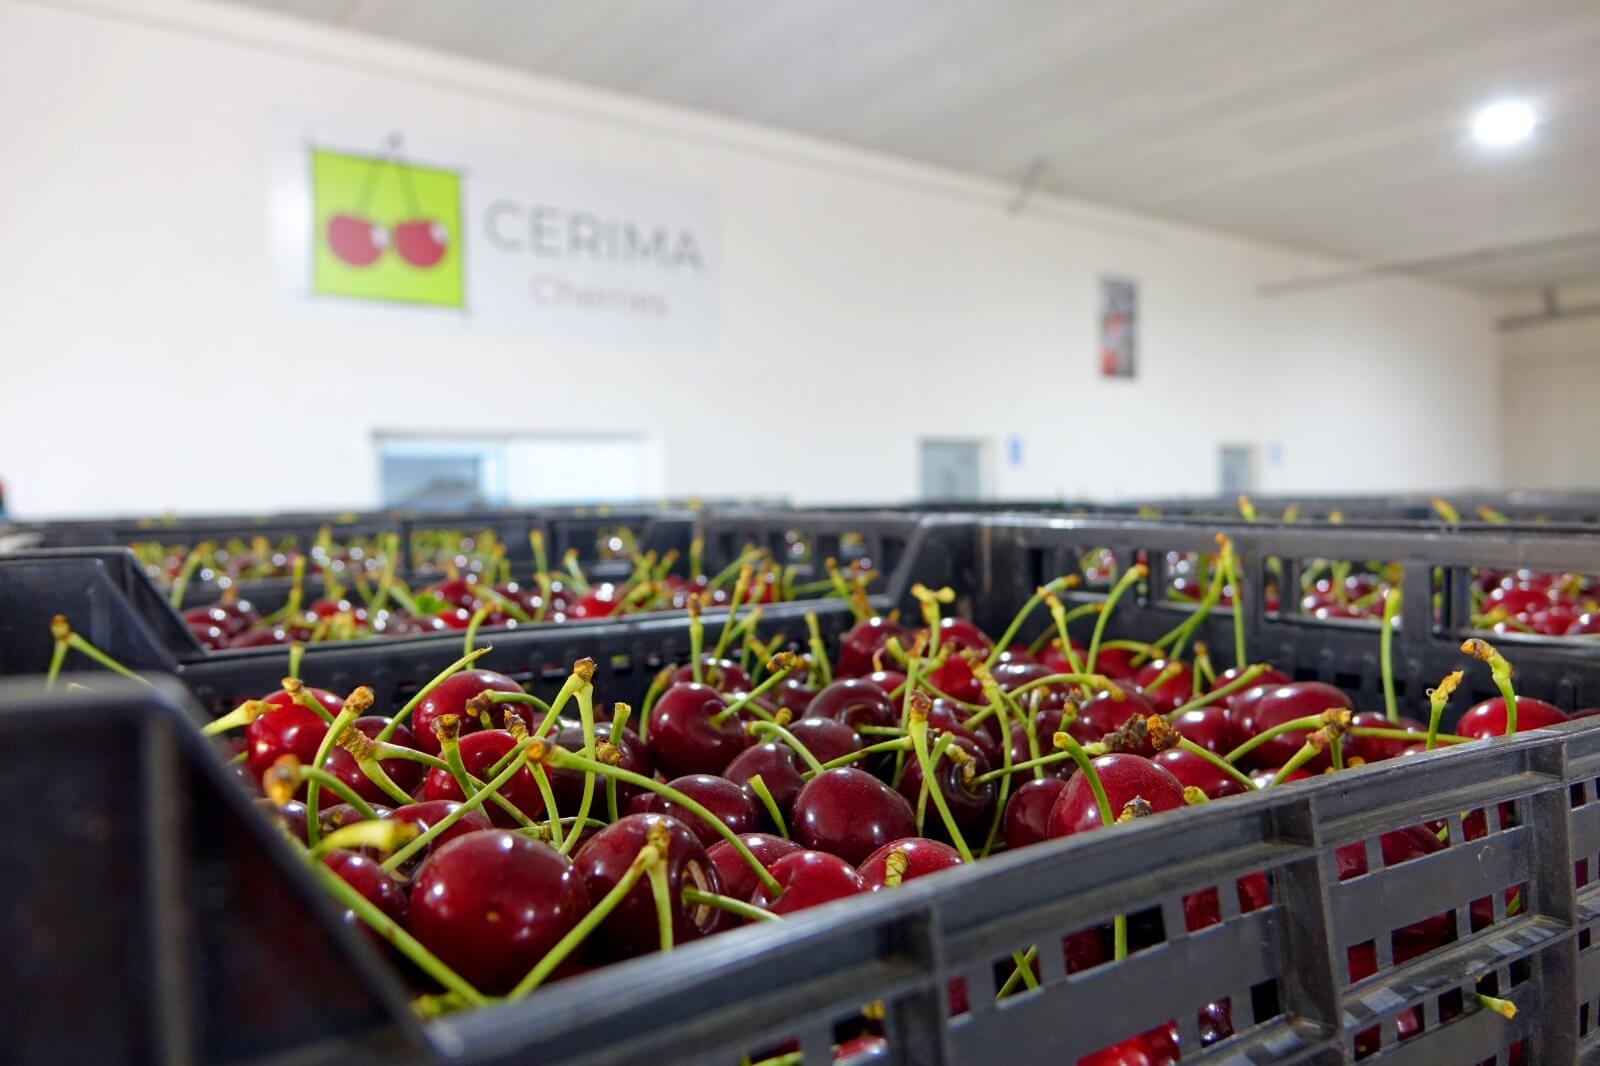 Cerima Cherries es una empresa dedicada a la producción y comercialización.